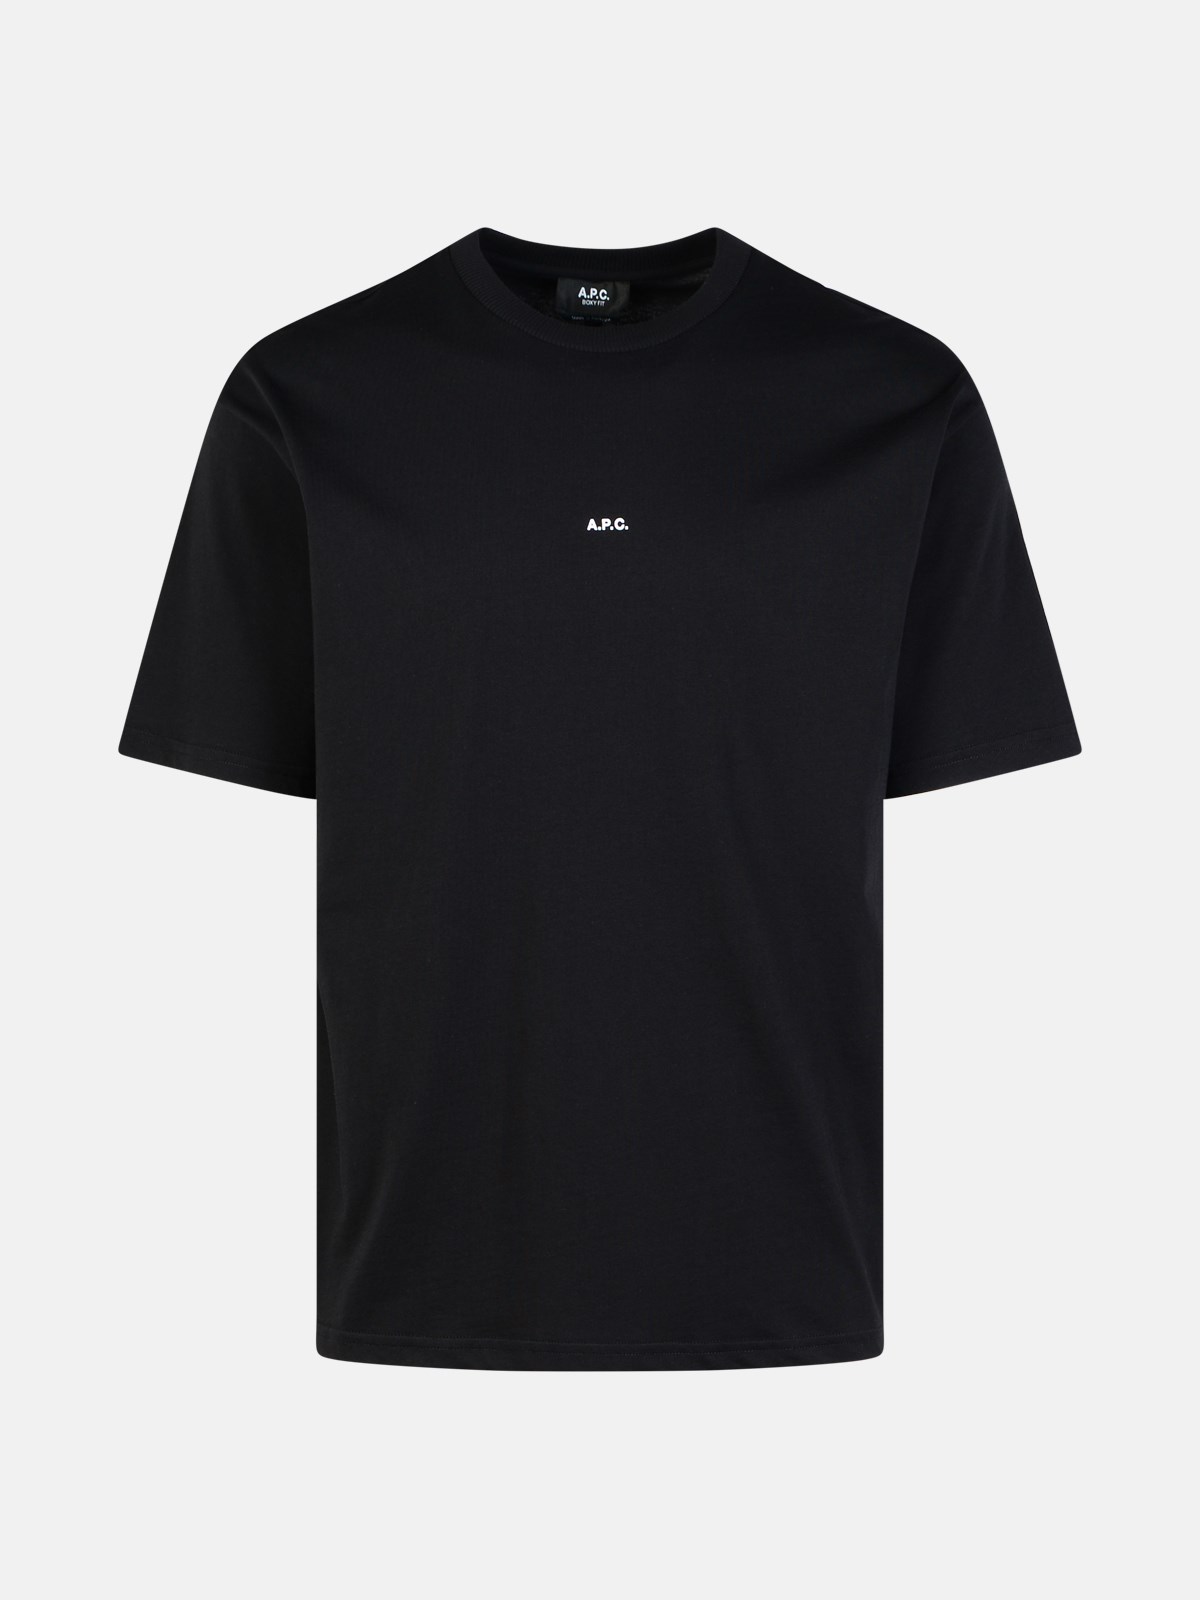 Shop Apc 'boxy' Black Cotton T-shirt